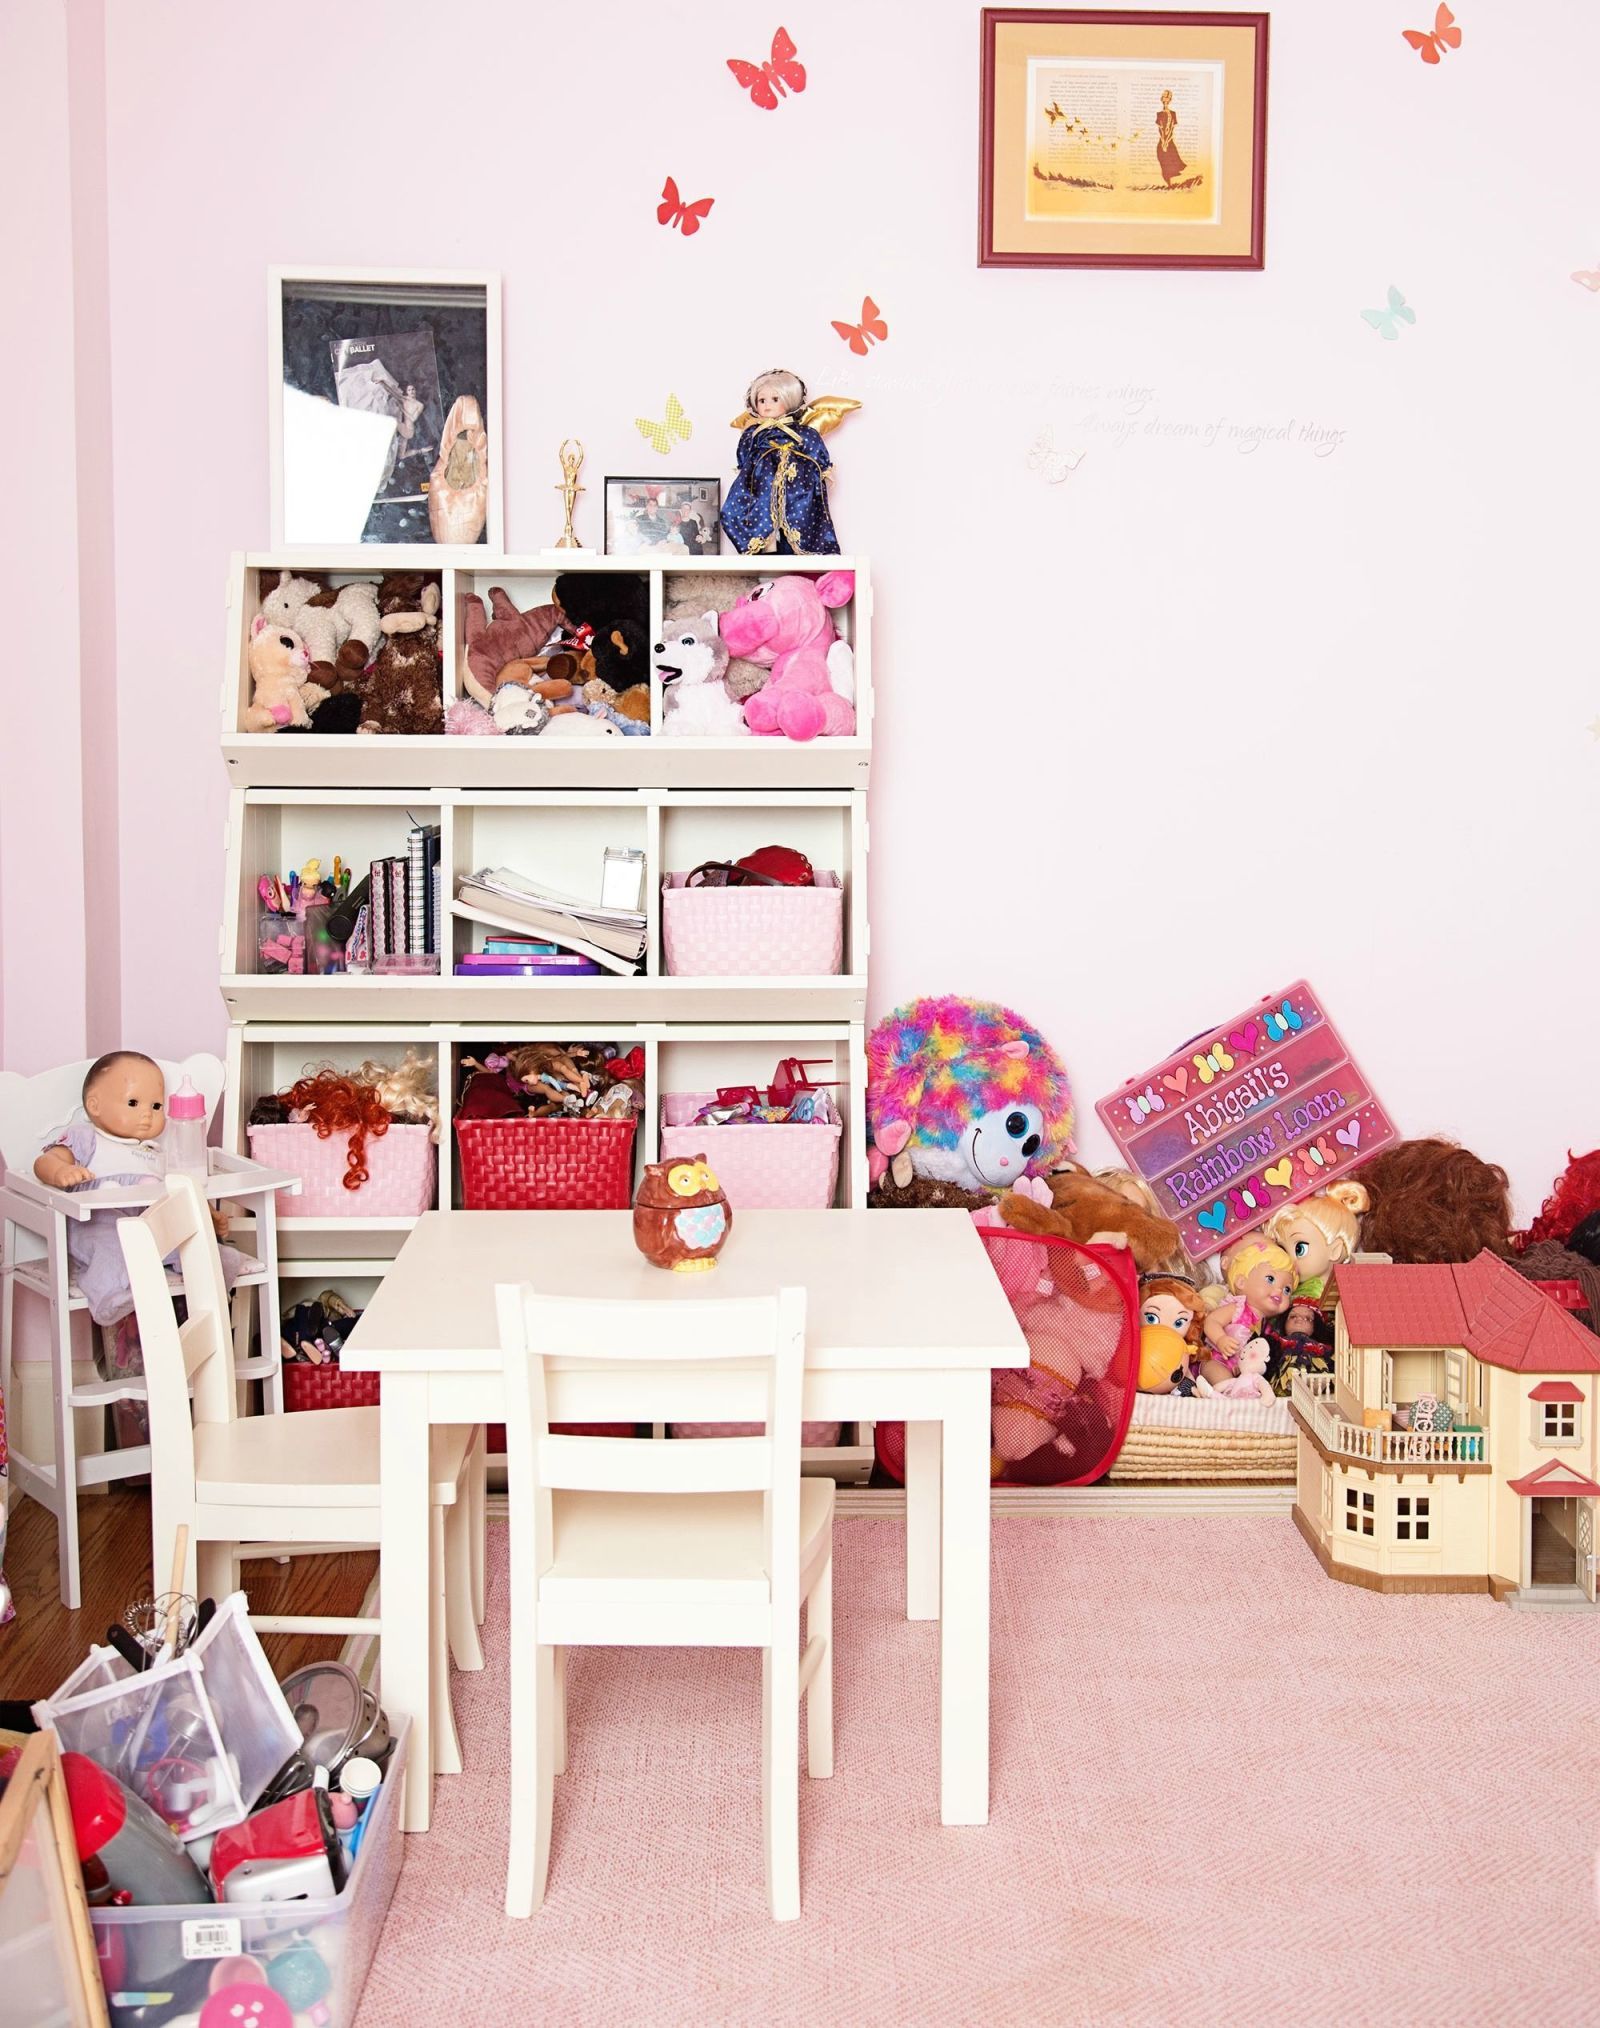 decluttering kids room